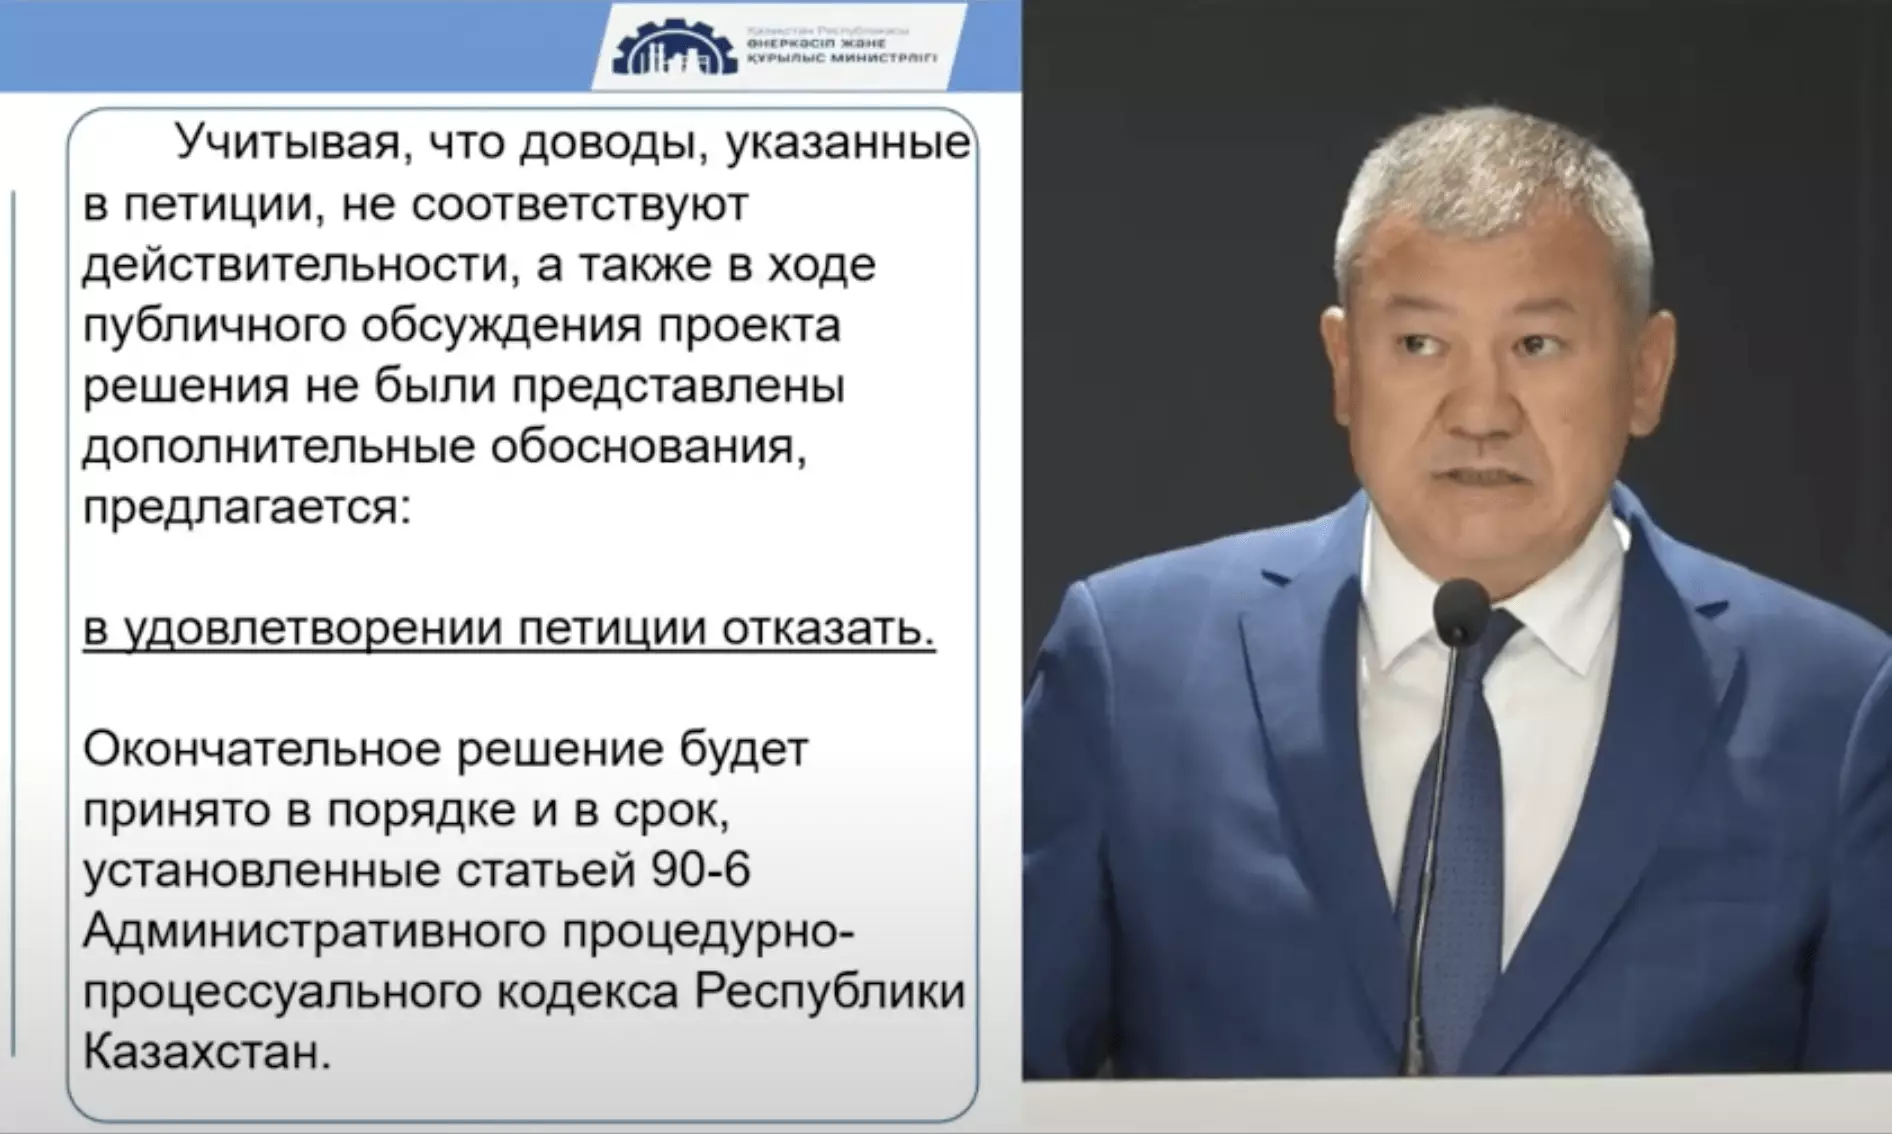 Минпром принял предварительное решение об отказе в удовлетворении петиции против утильсбора